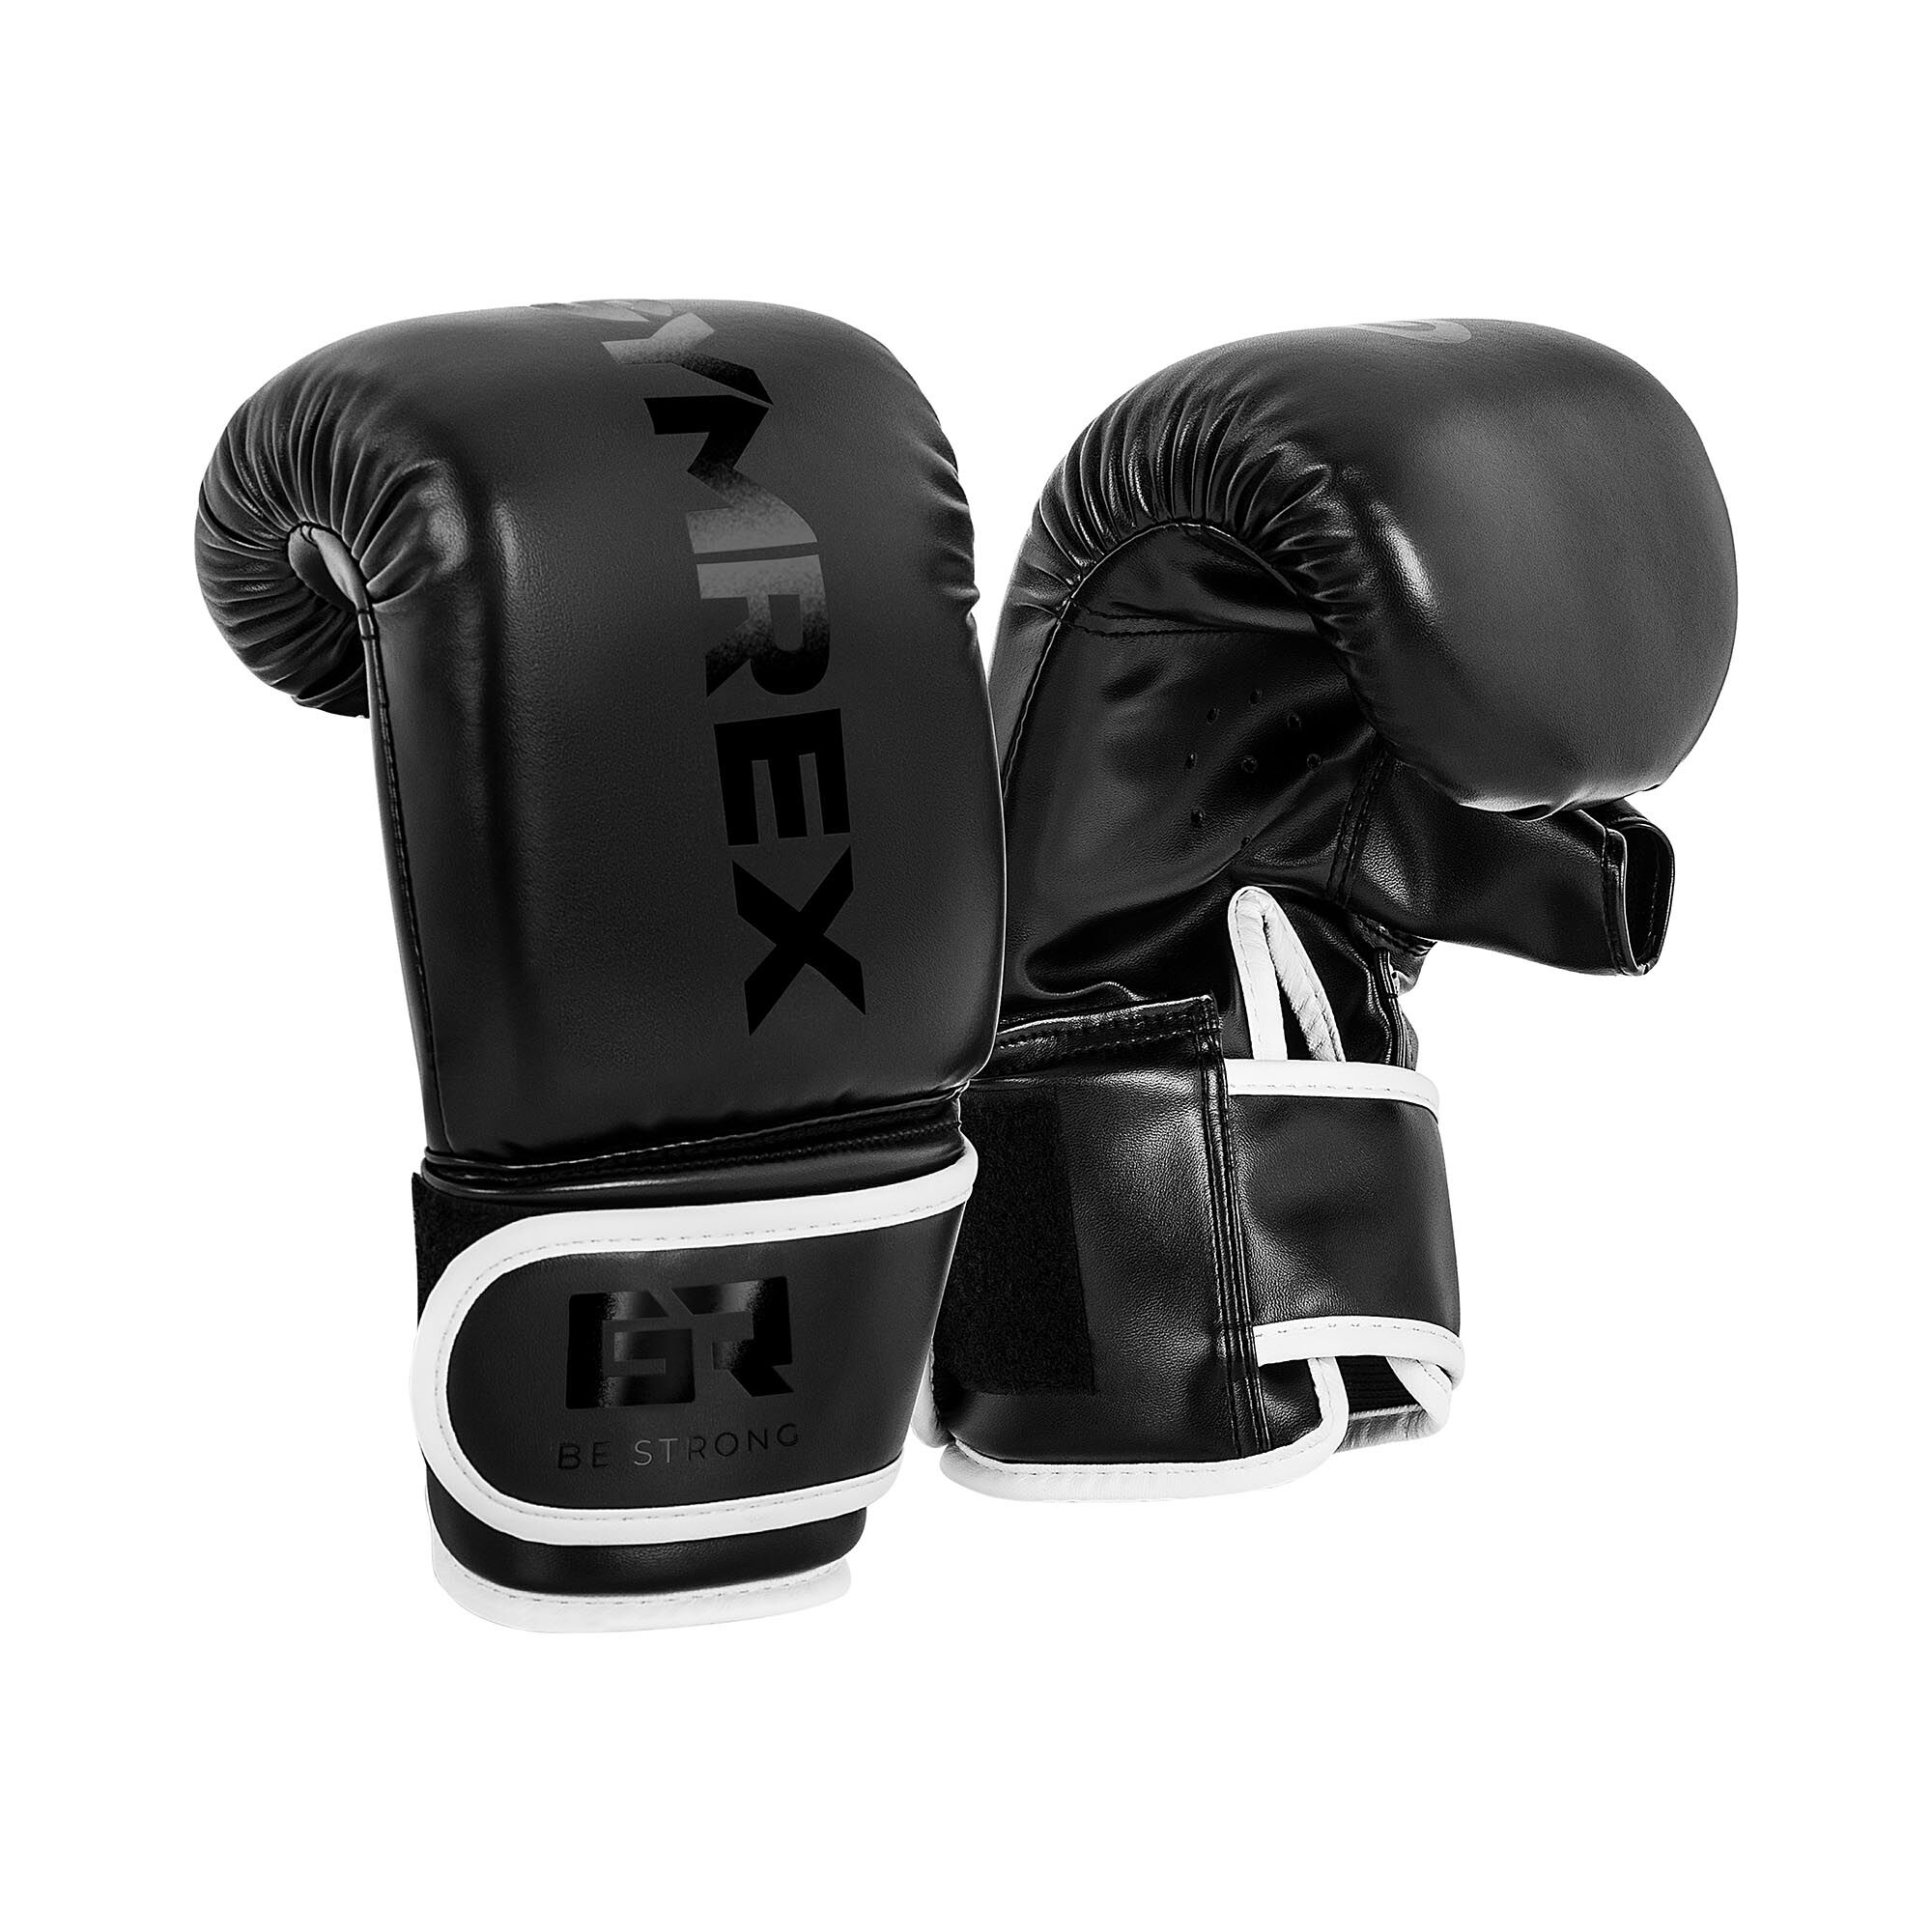 Gymrex Boxing Bag Gloves - 12 oz - black